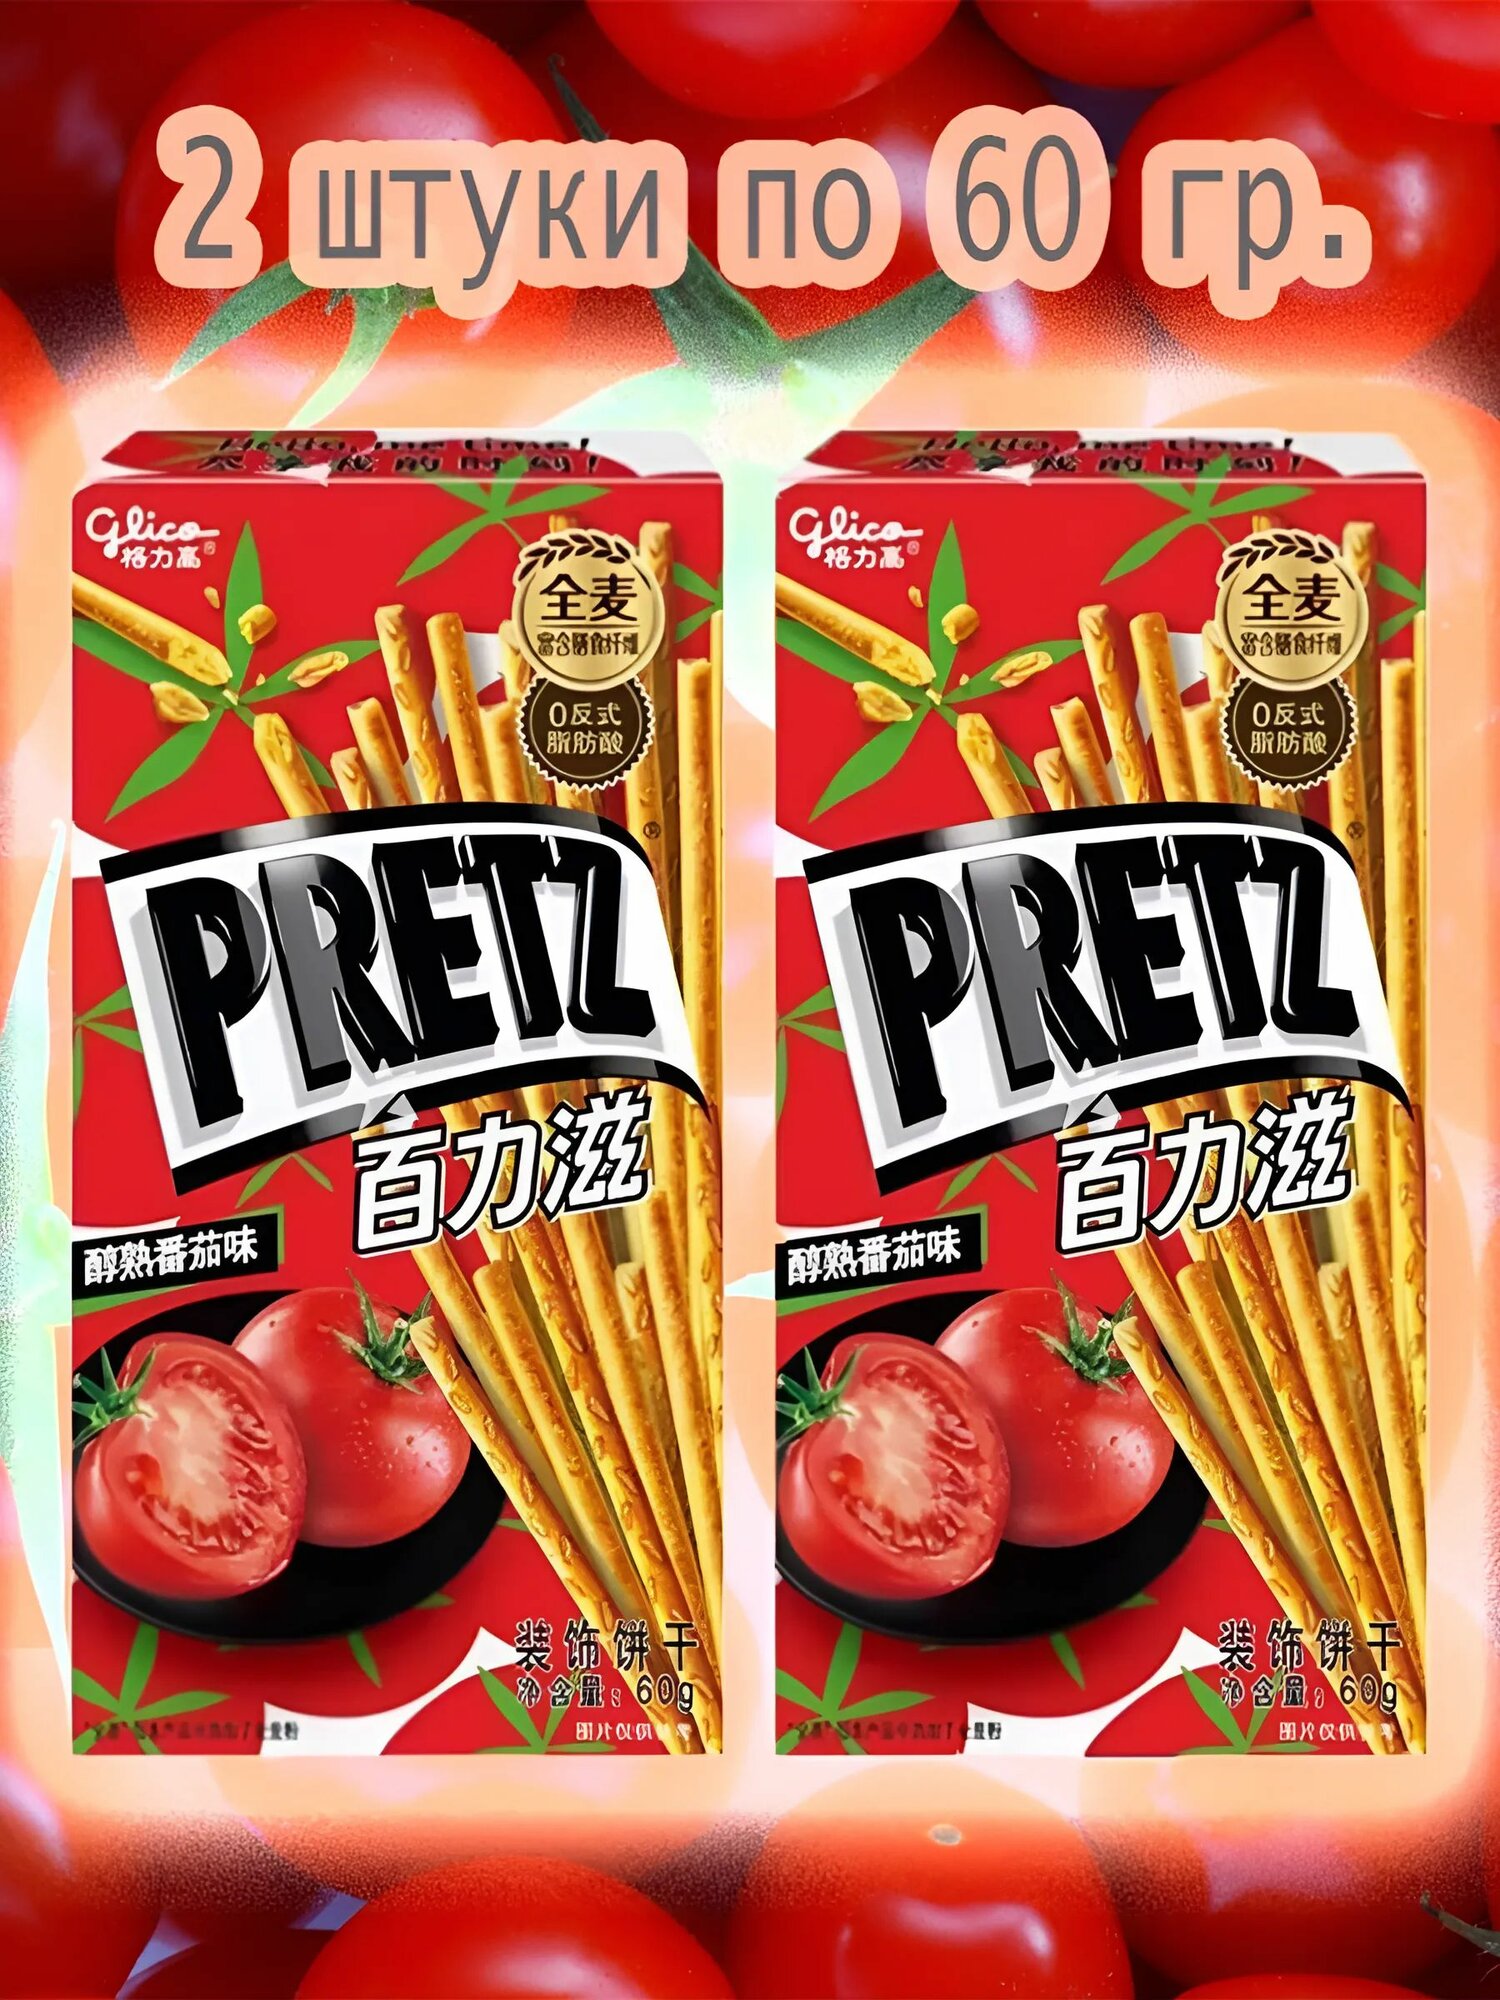 Палочки Pretz Harvest pocky с насыщенным томатным вкусом, 2 шт. Китай